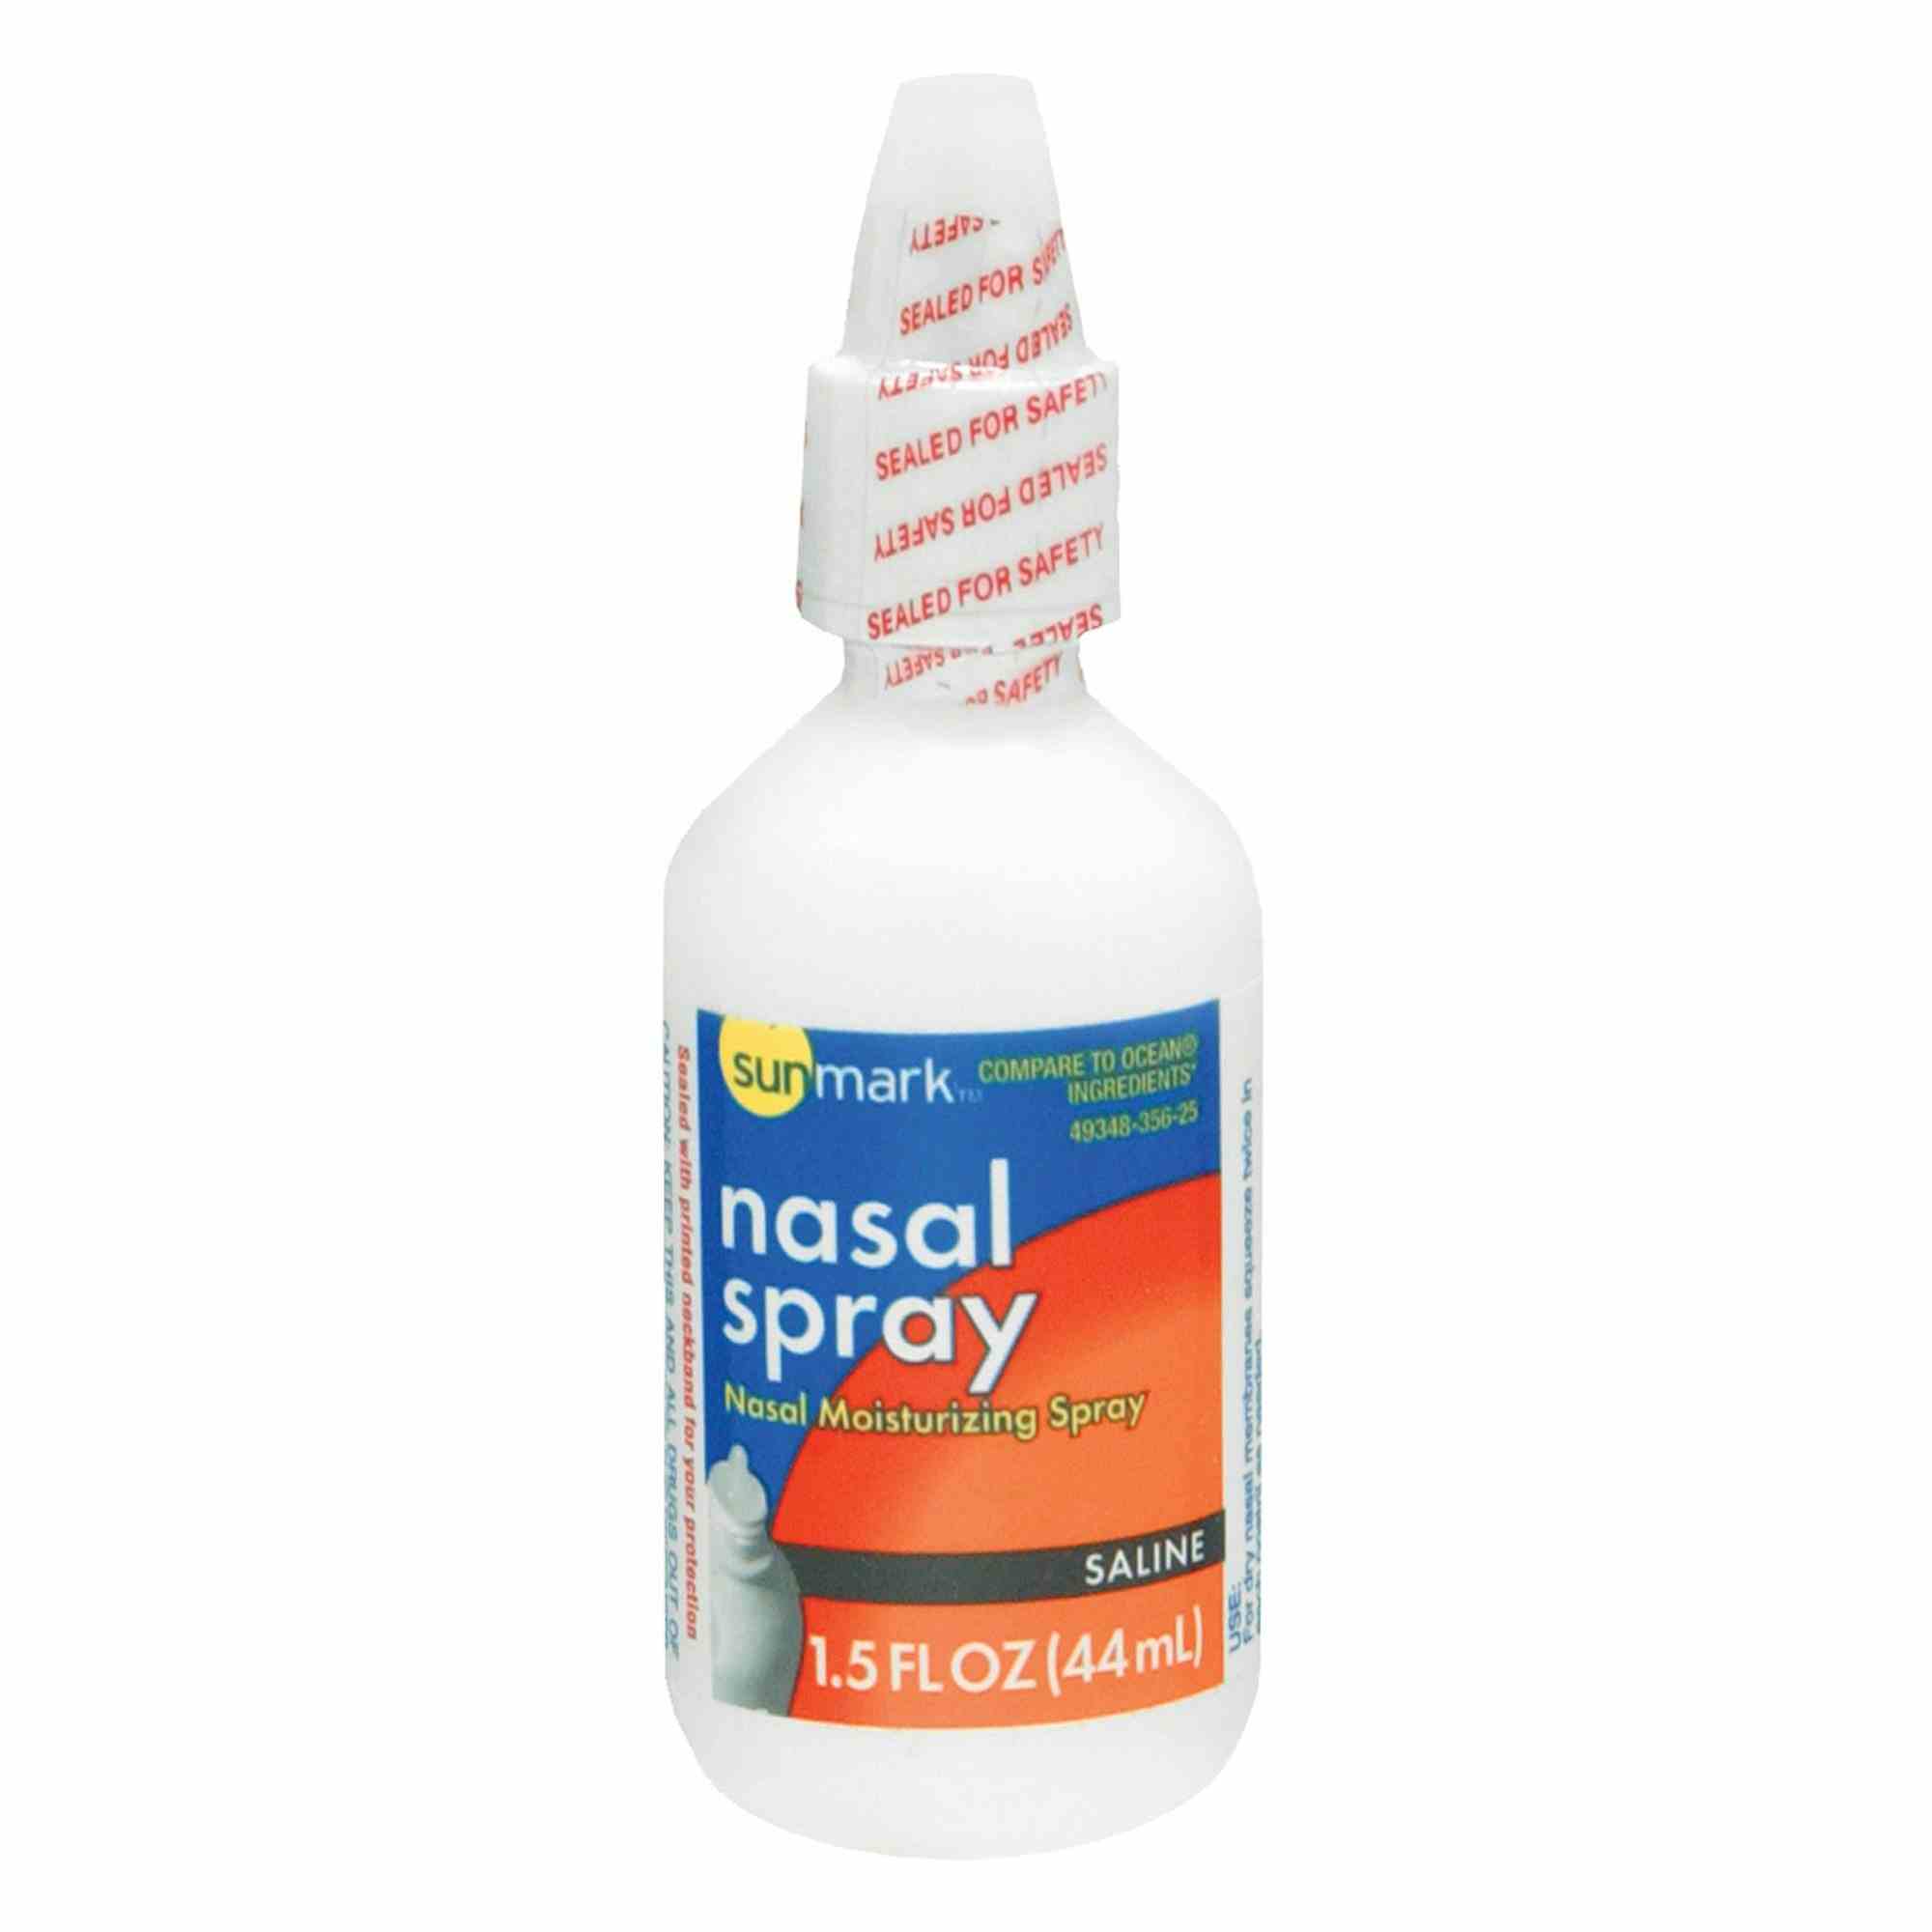 sunmark Nasal Saline Moisturizing Spray, 1.5 oz., 49348035625, 1 Each